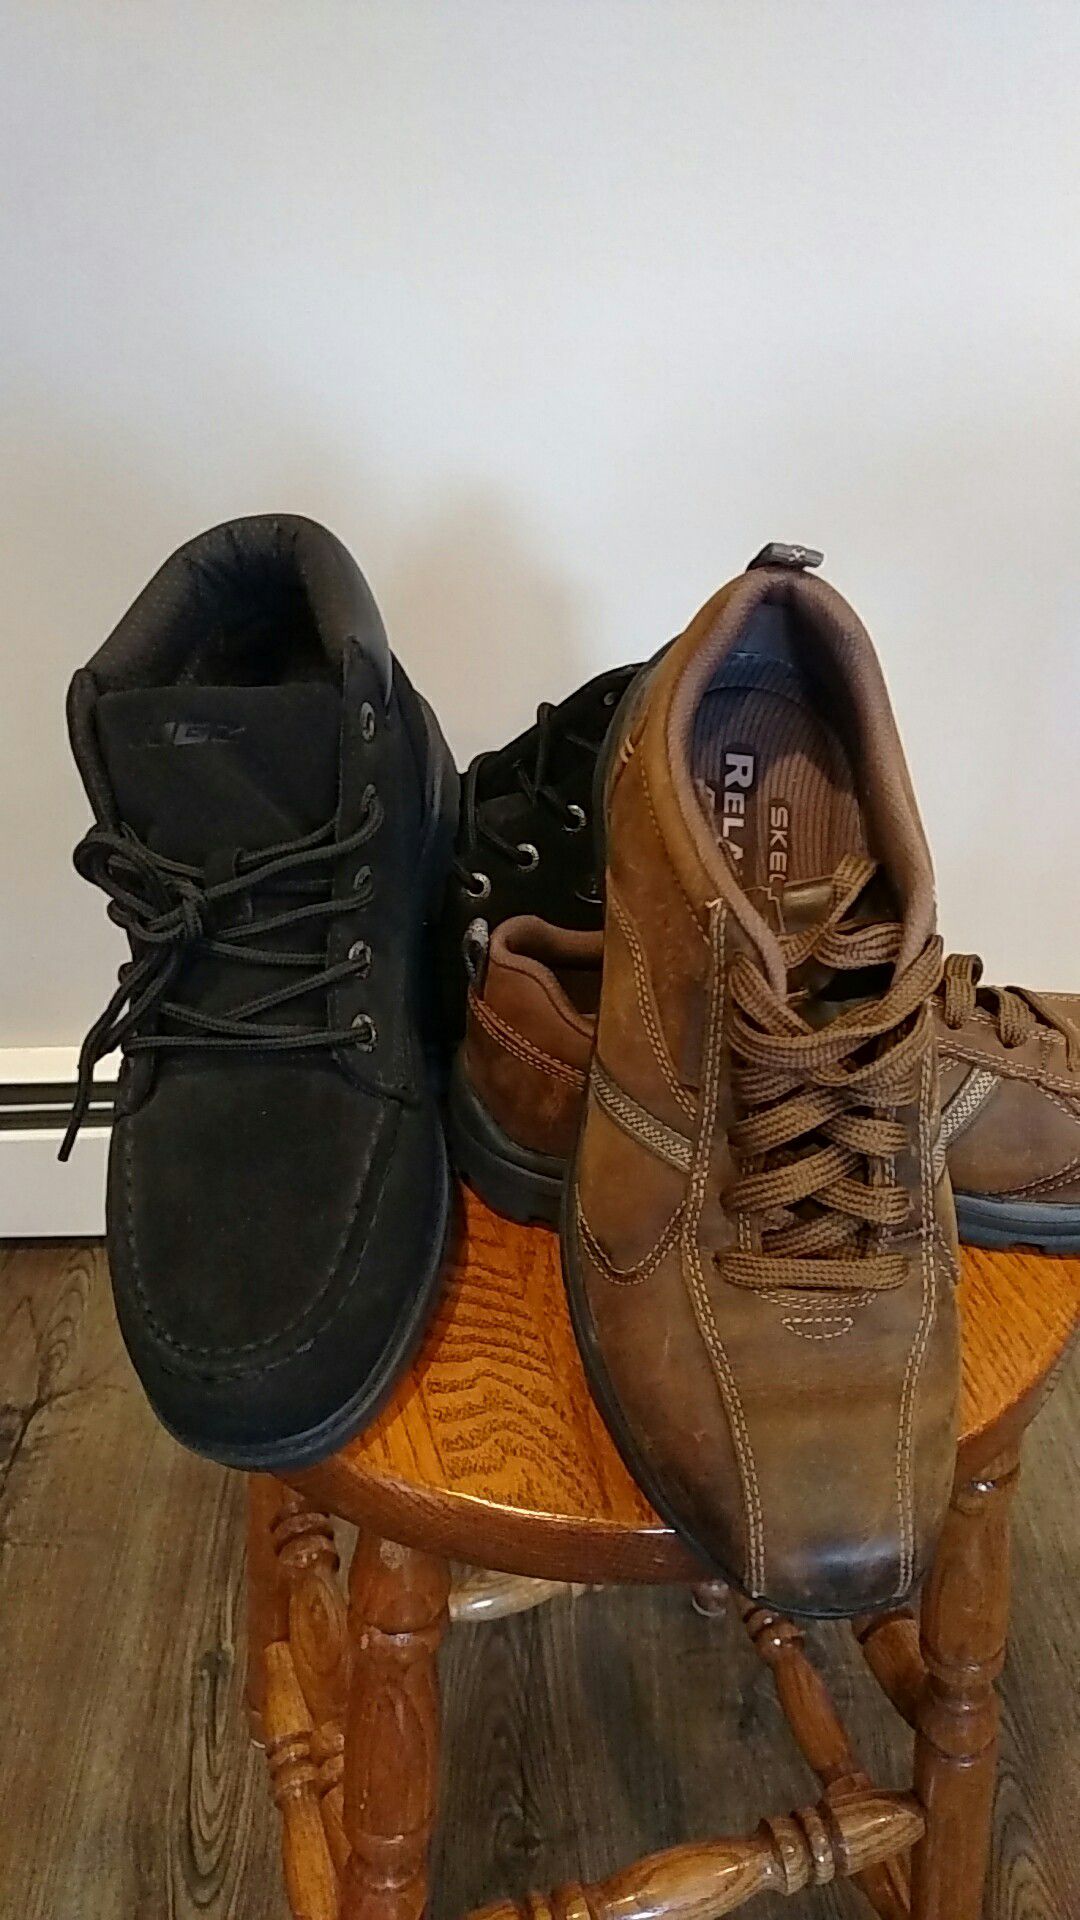 Men's LUGZ boots sz. 9.5 and Skechers shoes Sz. 9